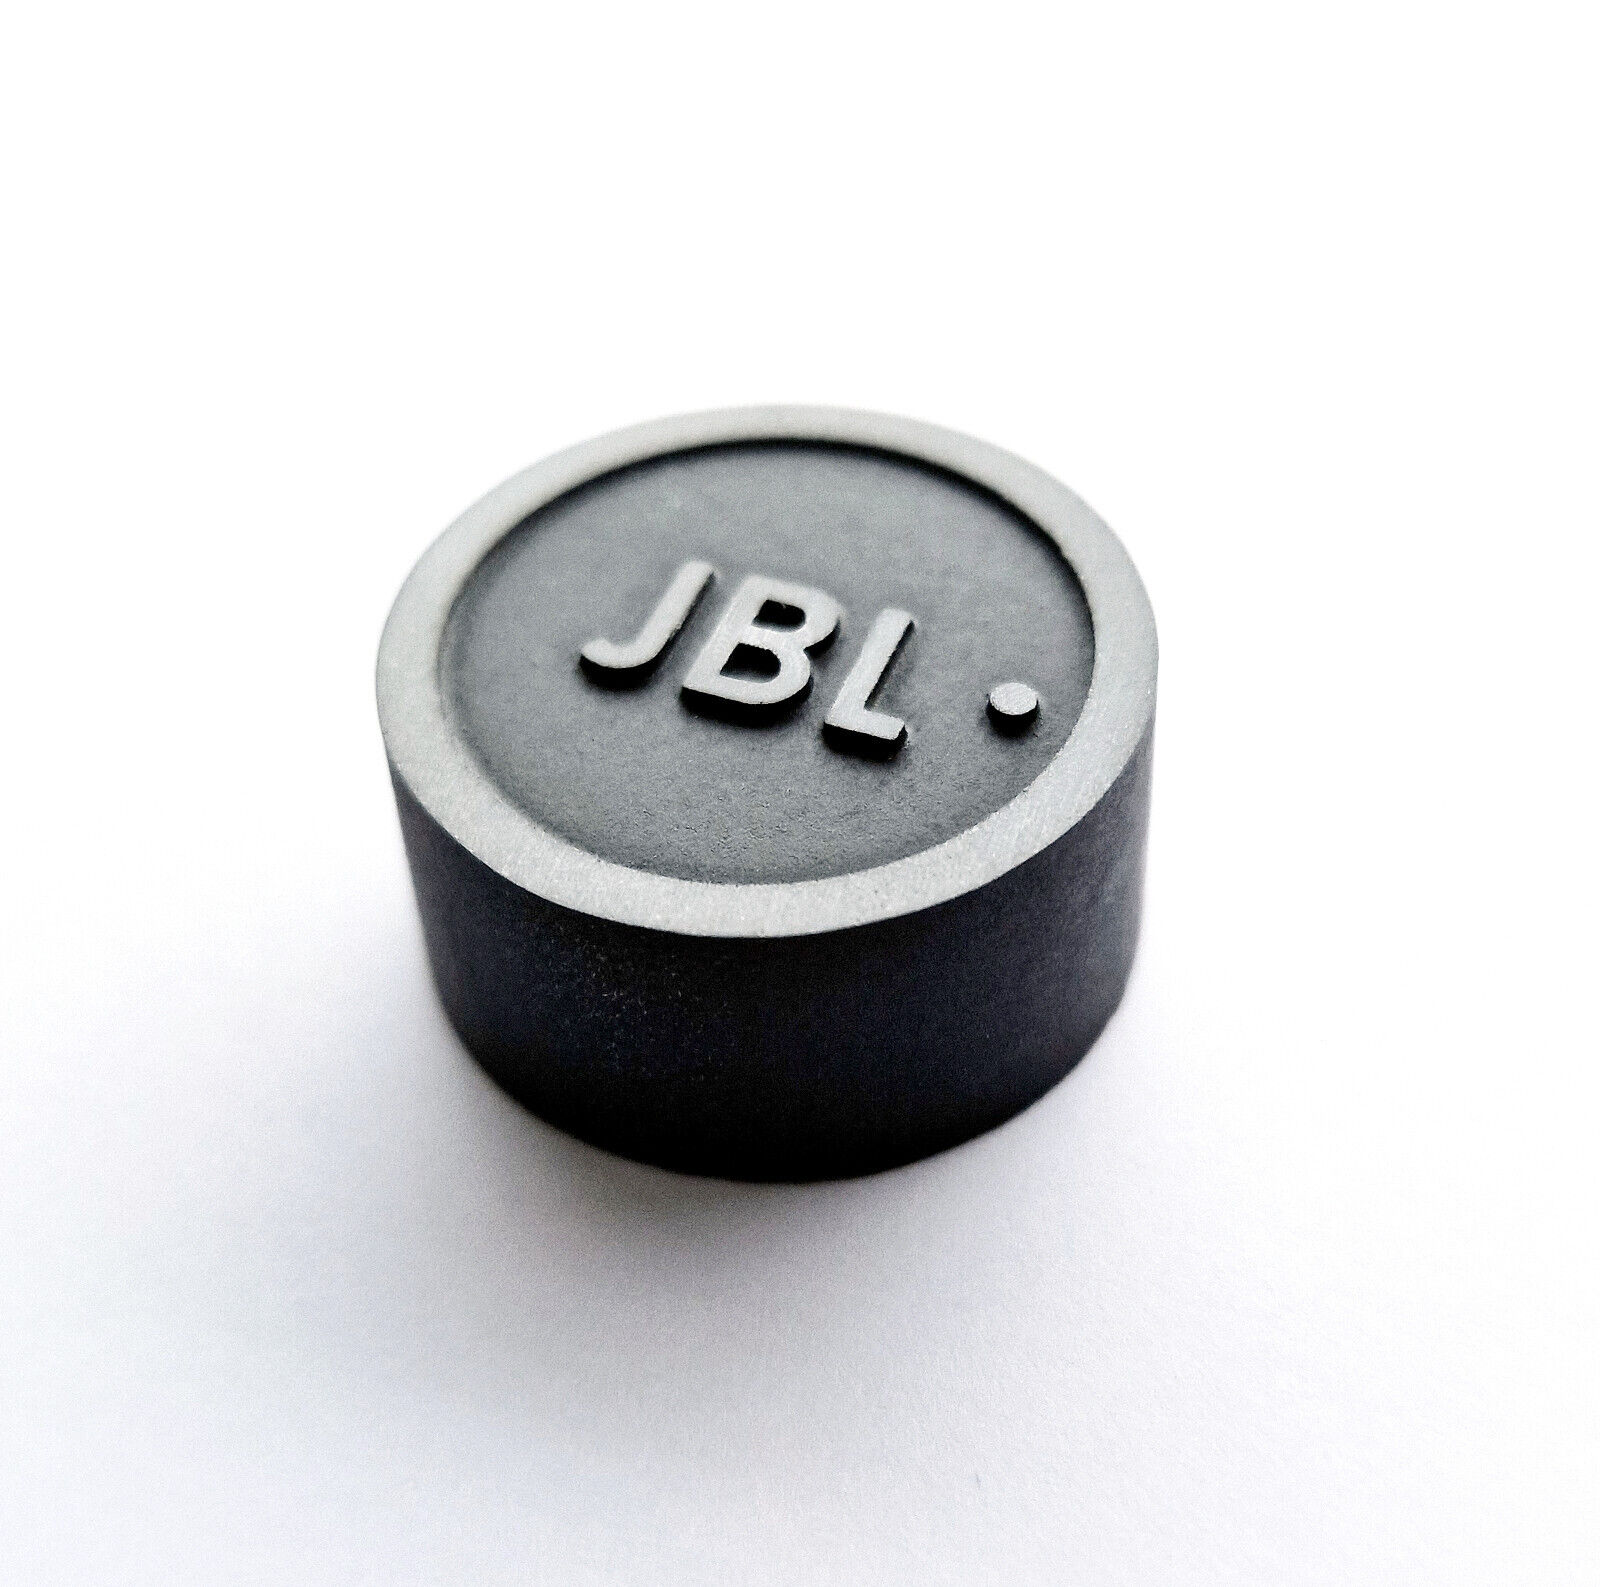 JBL crossover attenuator knob for JBL LX2, LX5, LX8, LX10, LX11, LX13 and others